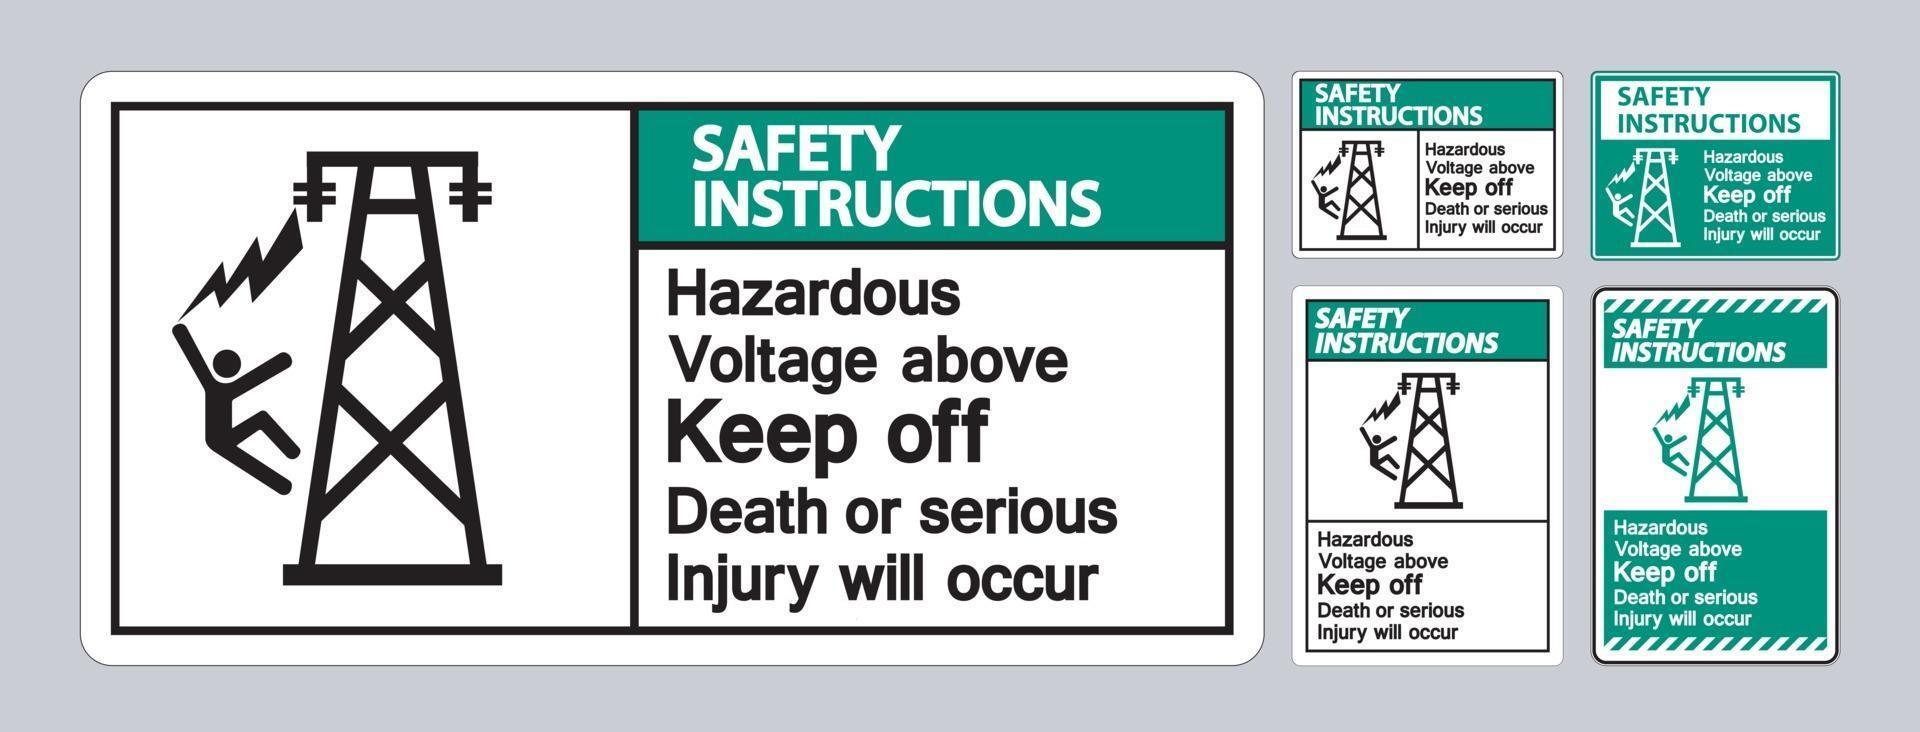 instruções de segurança voltagem perigosa acima evita a morte ou ferimentos graves ocorrerão. vetor